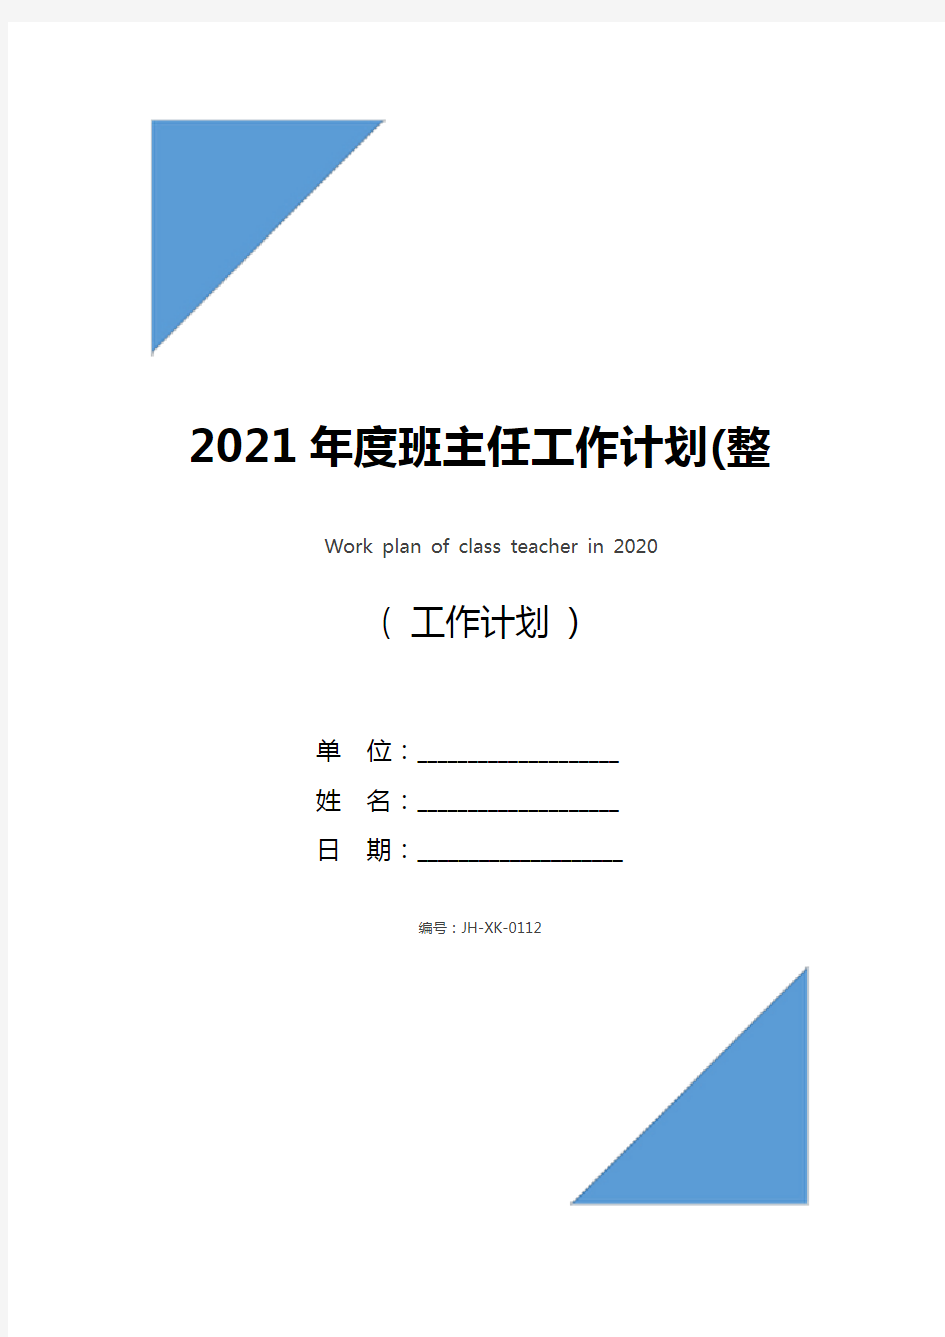 2021年度班主任工作计划(整理版)